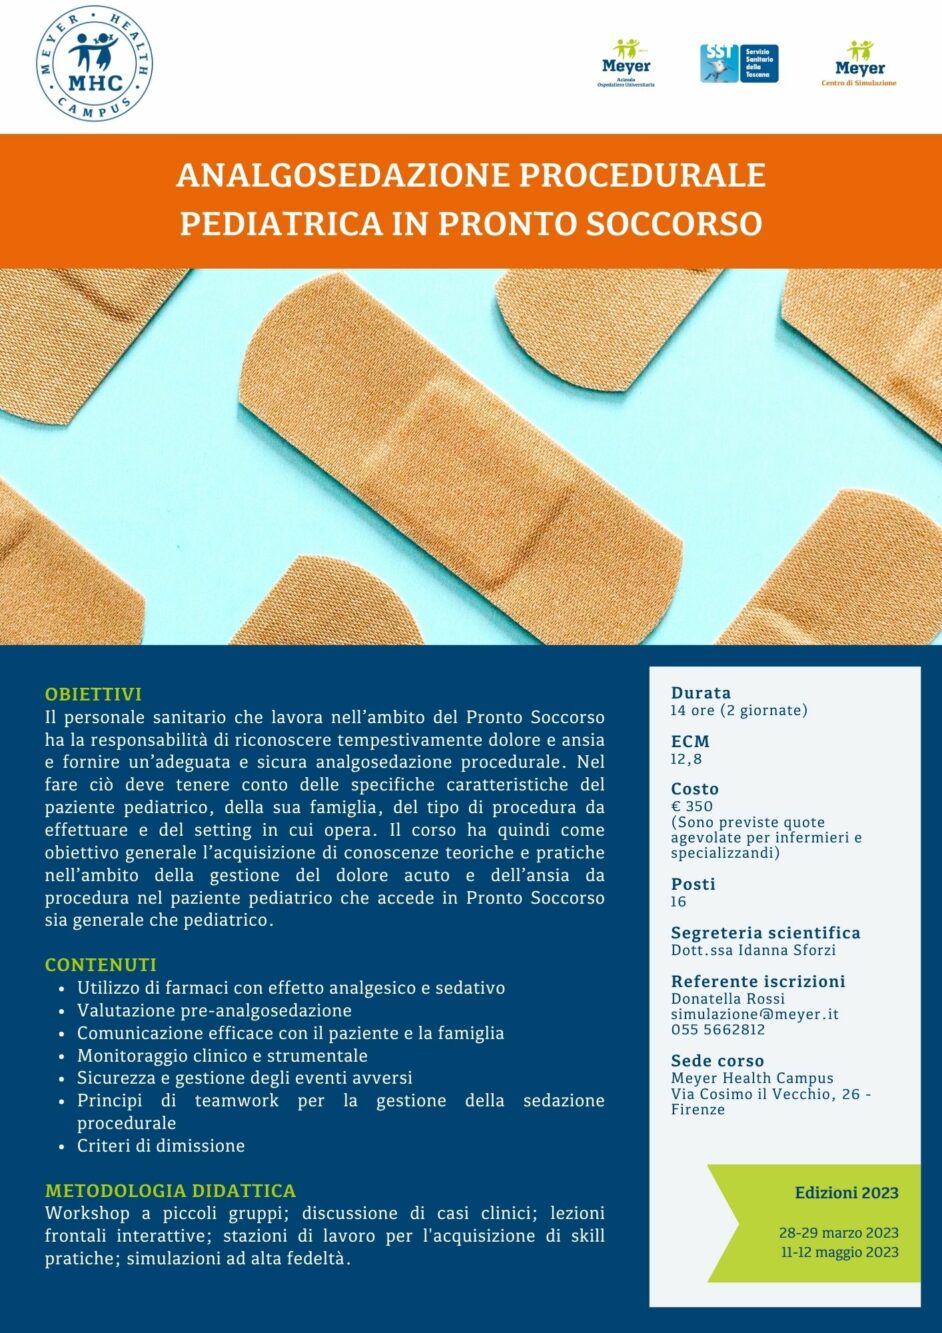 Analgosedazione procedurale pediatrica in Pronto Soccorso (11-12 maggio 2023)